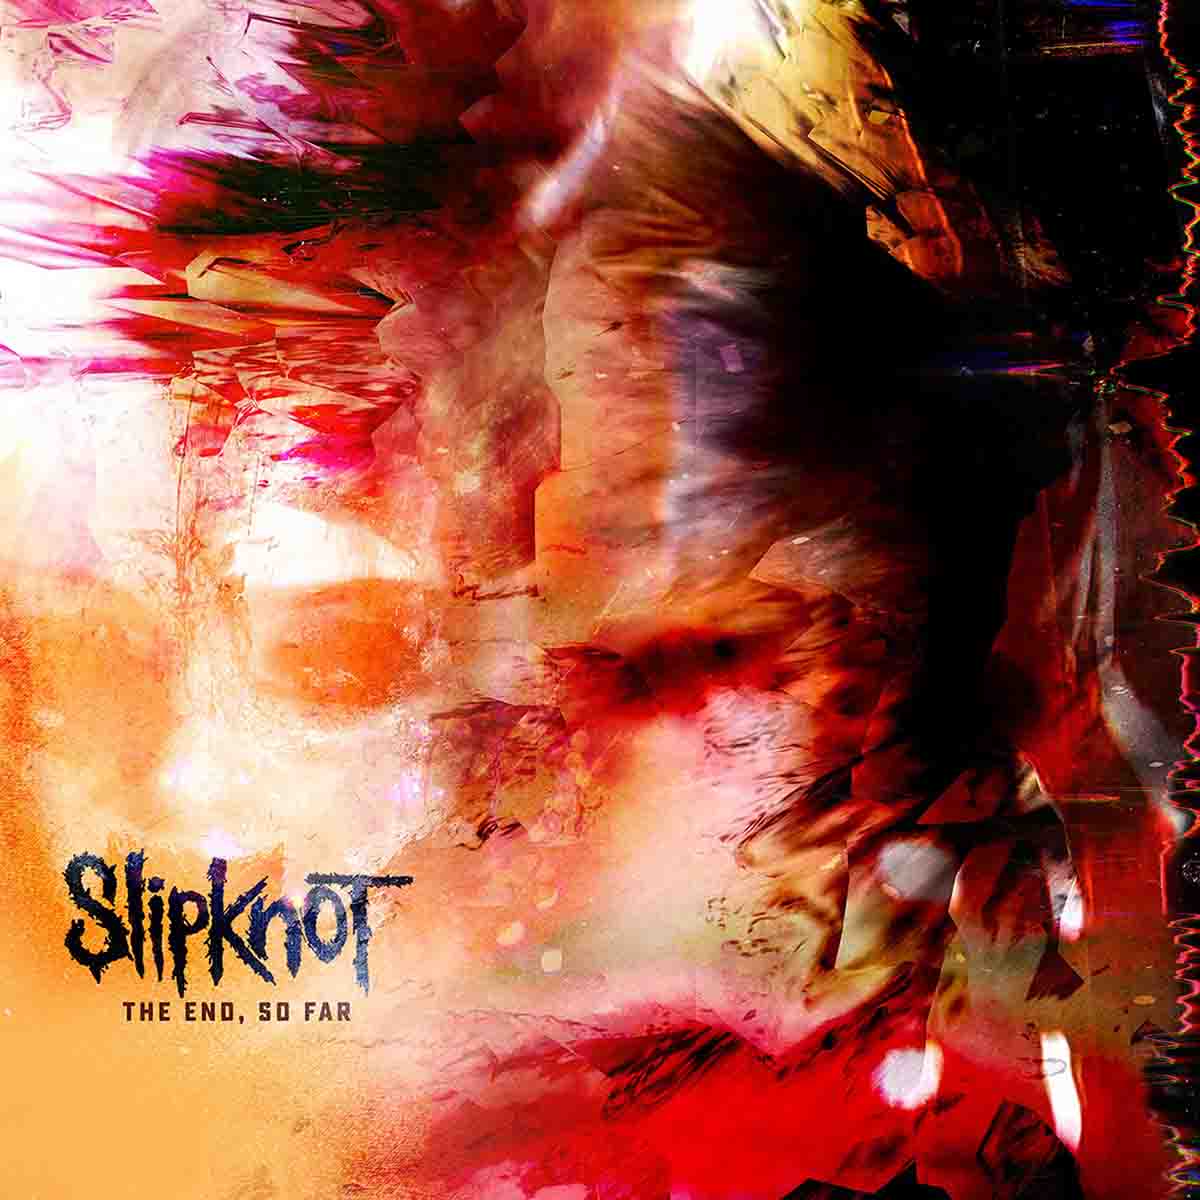 Upcoming: New album Slipknot - The End, So Far - September 30th